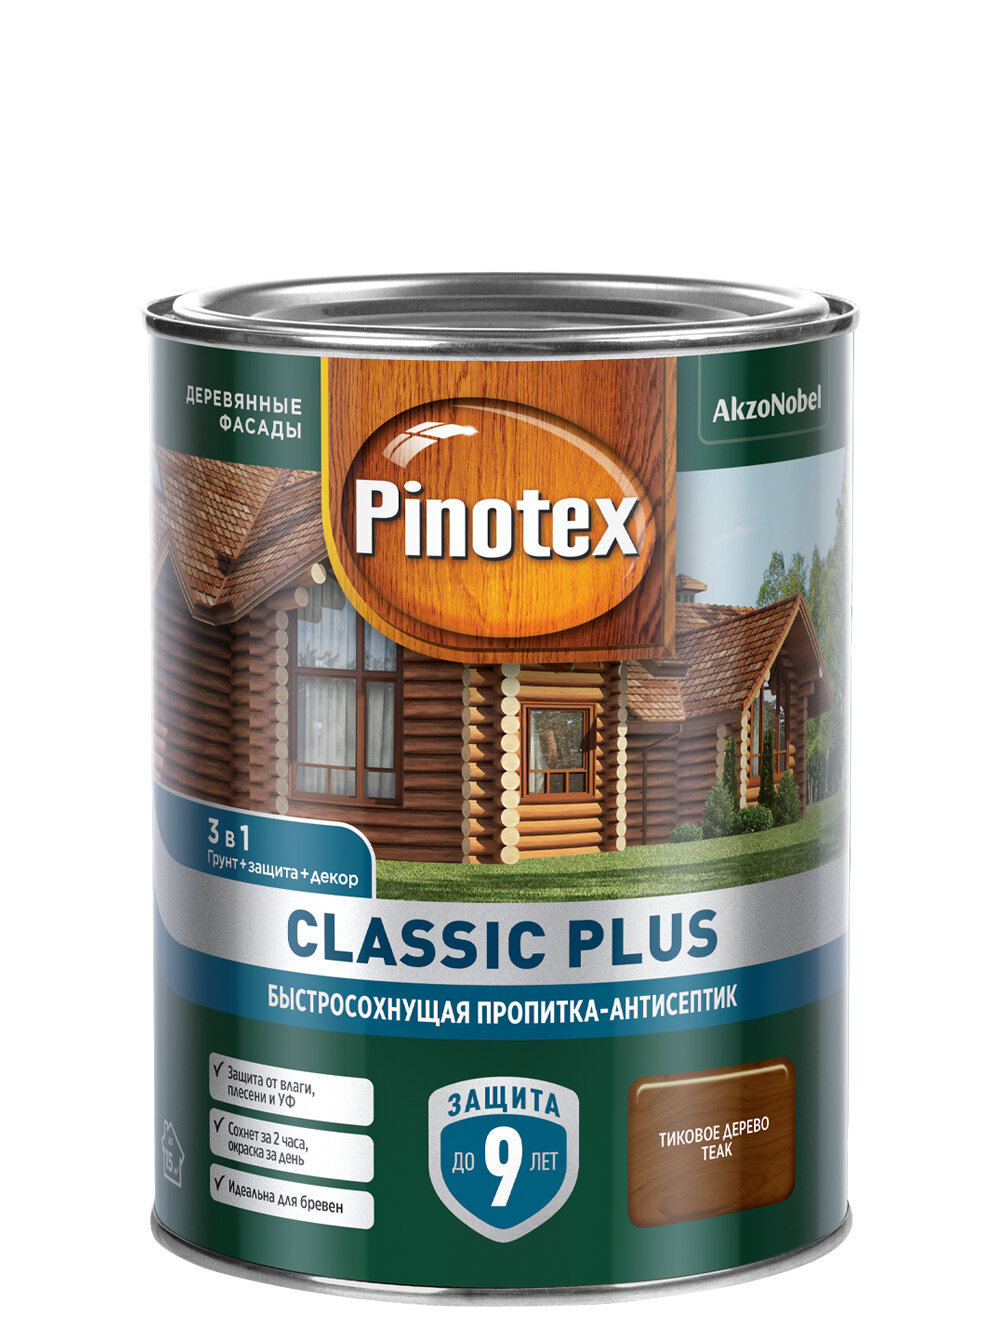 Пропитка декоративная для защиты древесины Pinotex Classic Plus 3 в 1 тиковое дерево 1 л.